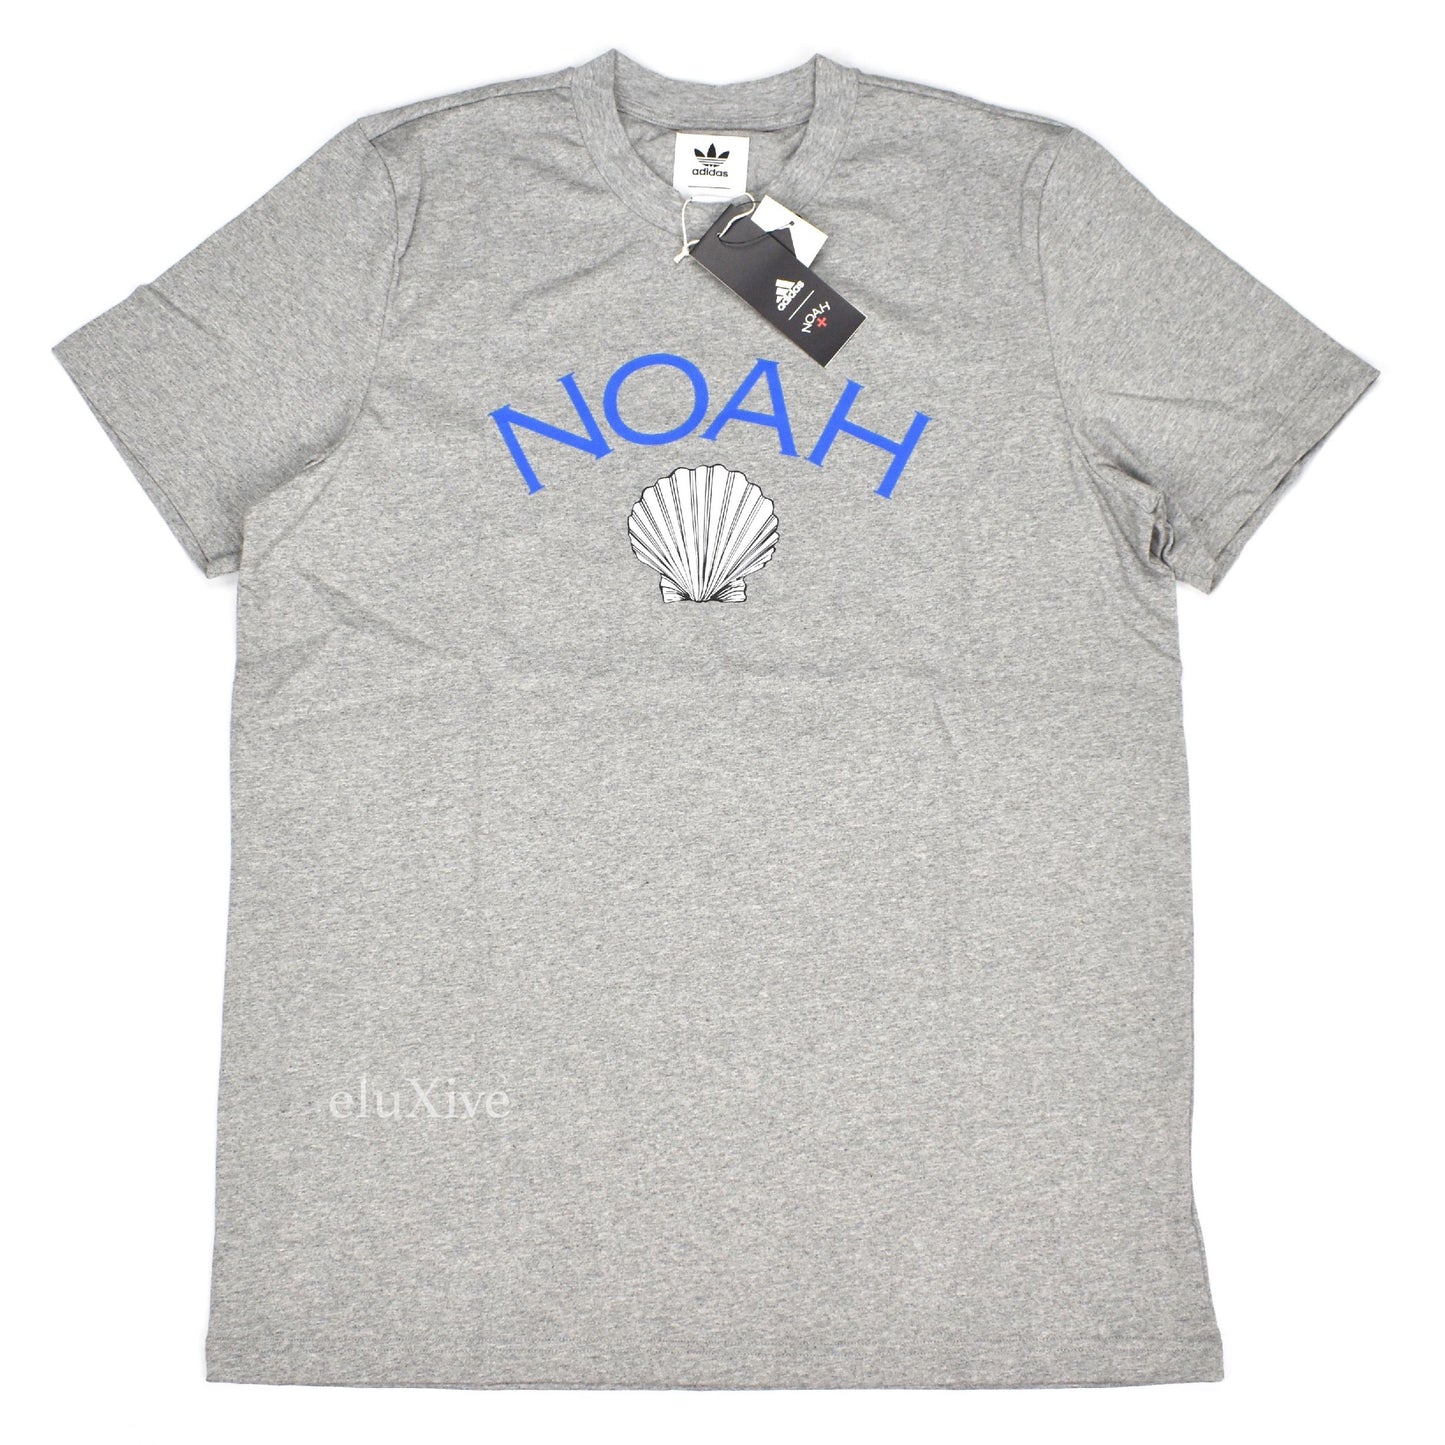 Noah x Adidas - Shell Core Logo T-Shirt (Gray)